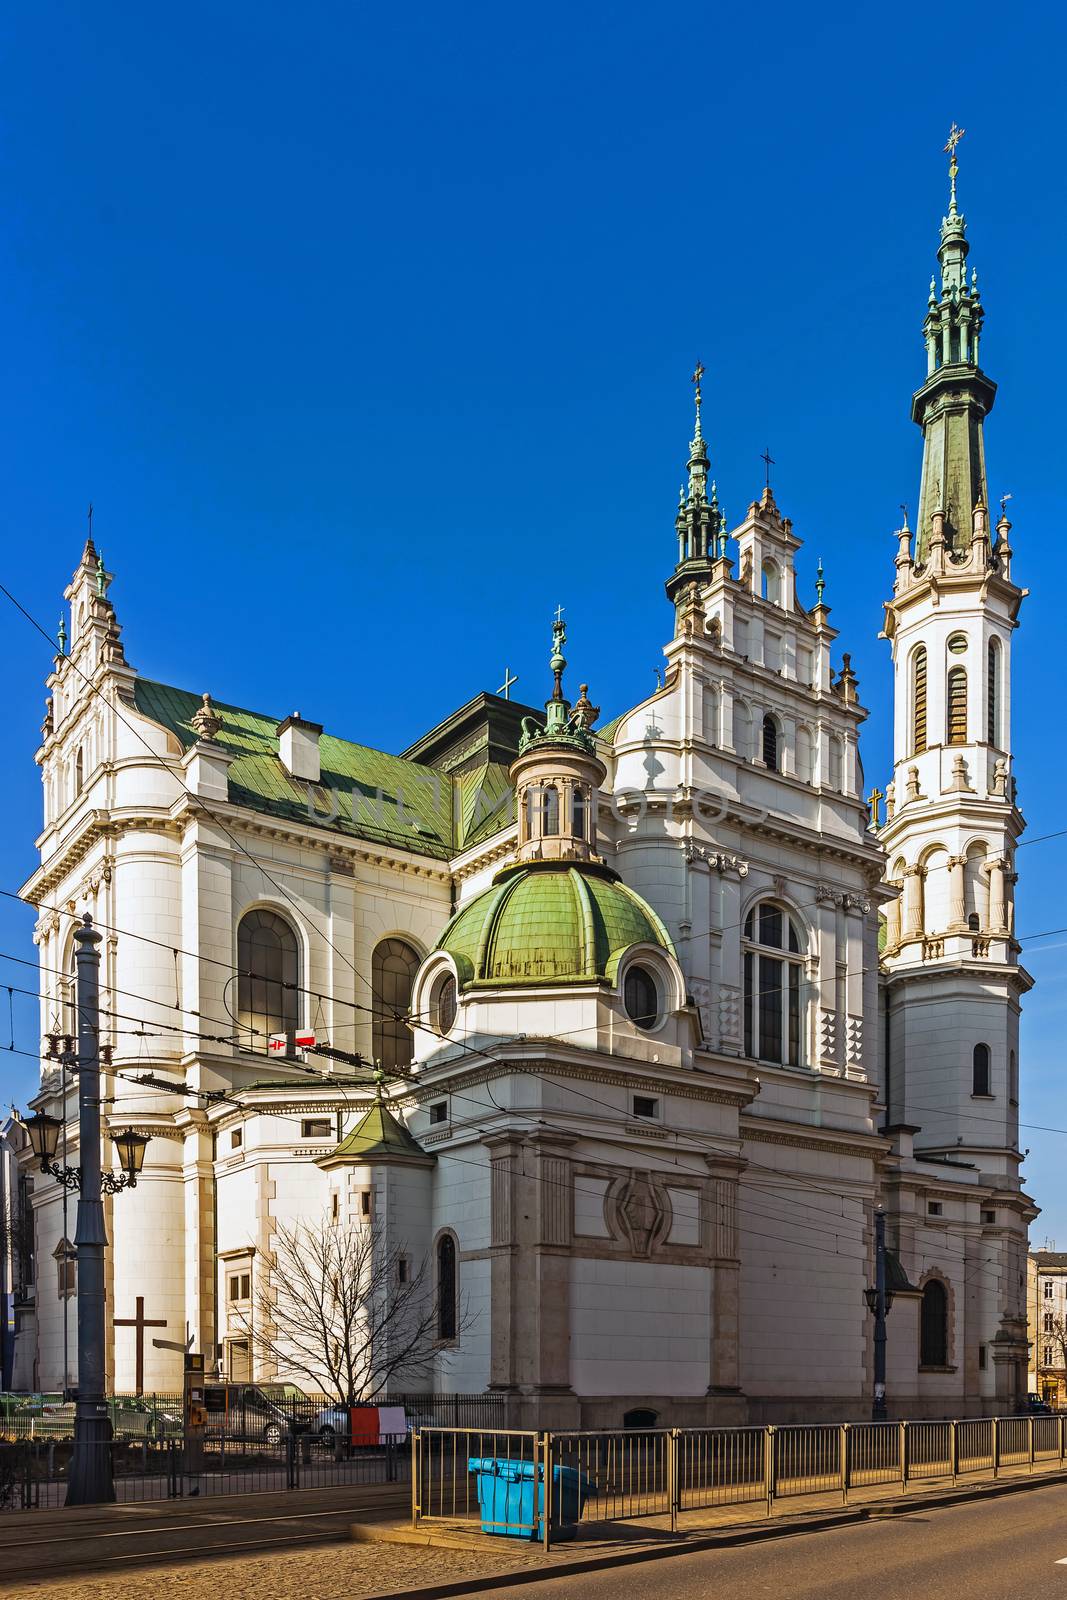 Church of the Holy Redeemer by pawel_szczepanski